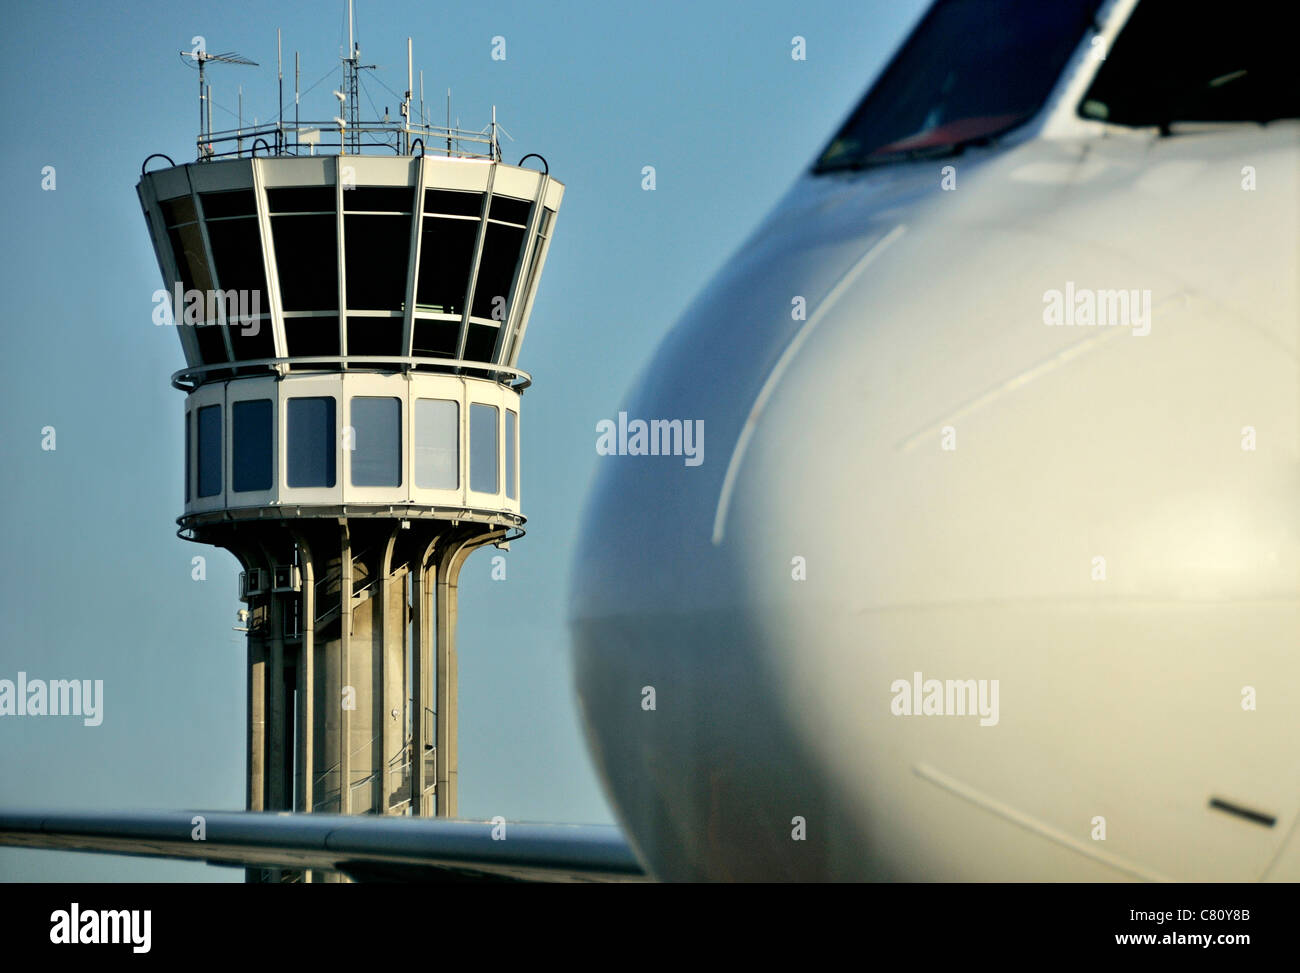 Tour de contrôle de la circulation aérienne et d'avion à l'aéroport Saint Exupéry, Lyon, France Banque D'Images